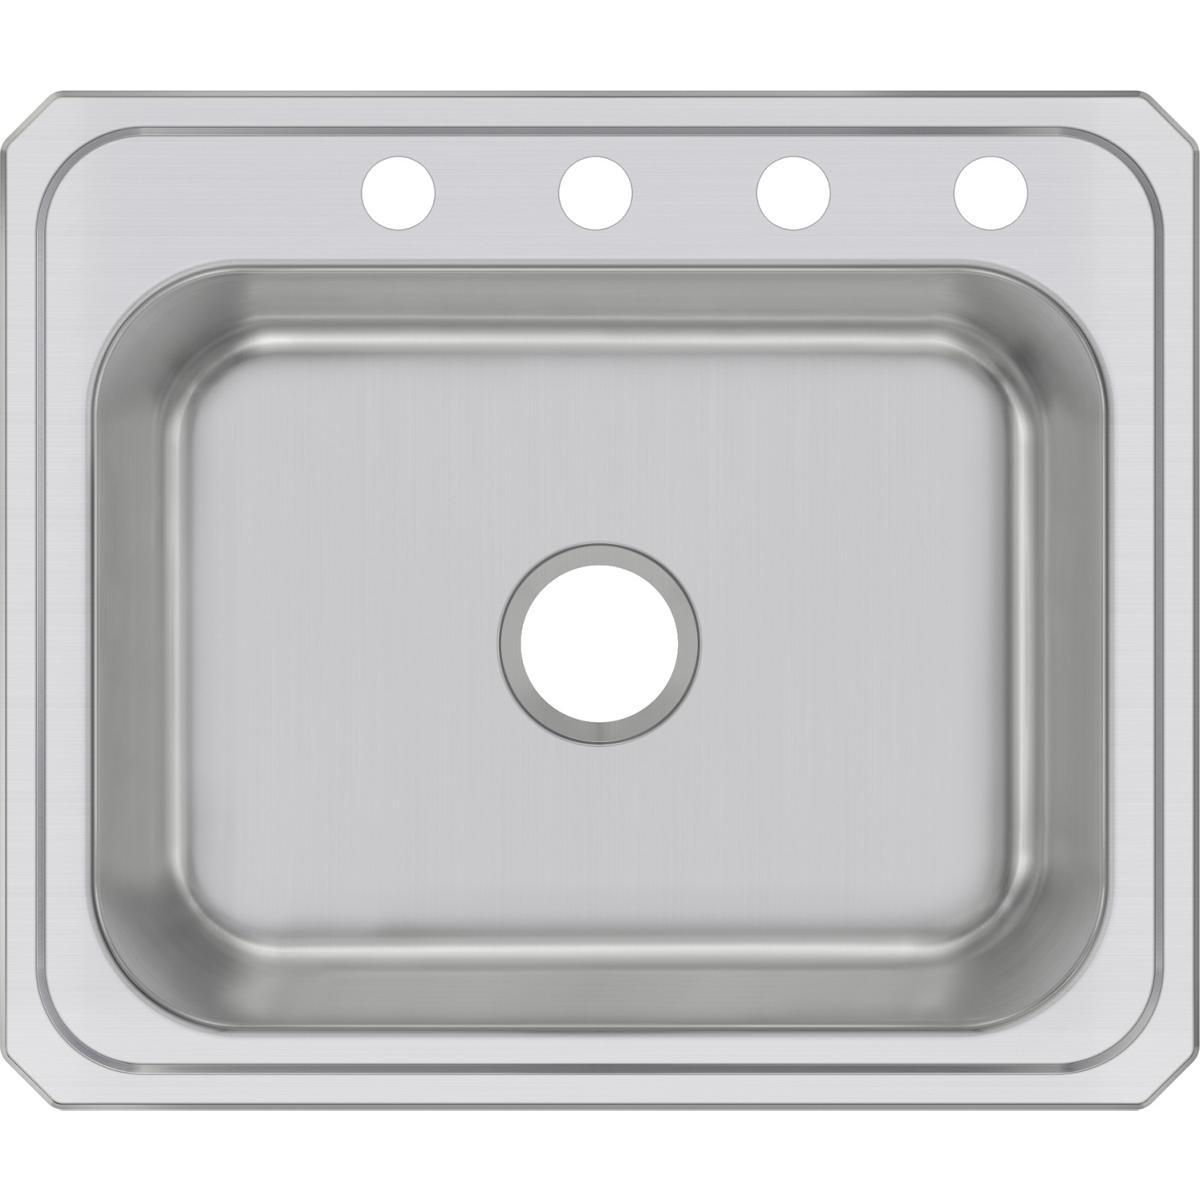 Elkay Celebrity Stainless Steel 25" x 21-1/4" x 6-7/8" Single Bowl Drop-in Sink